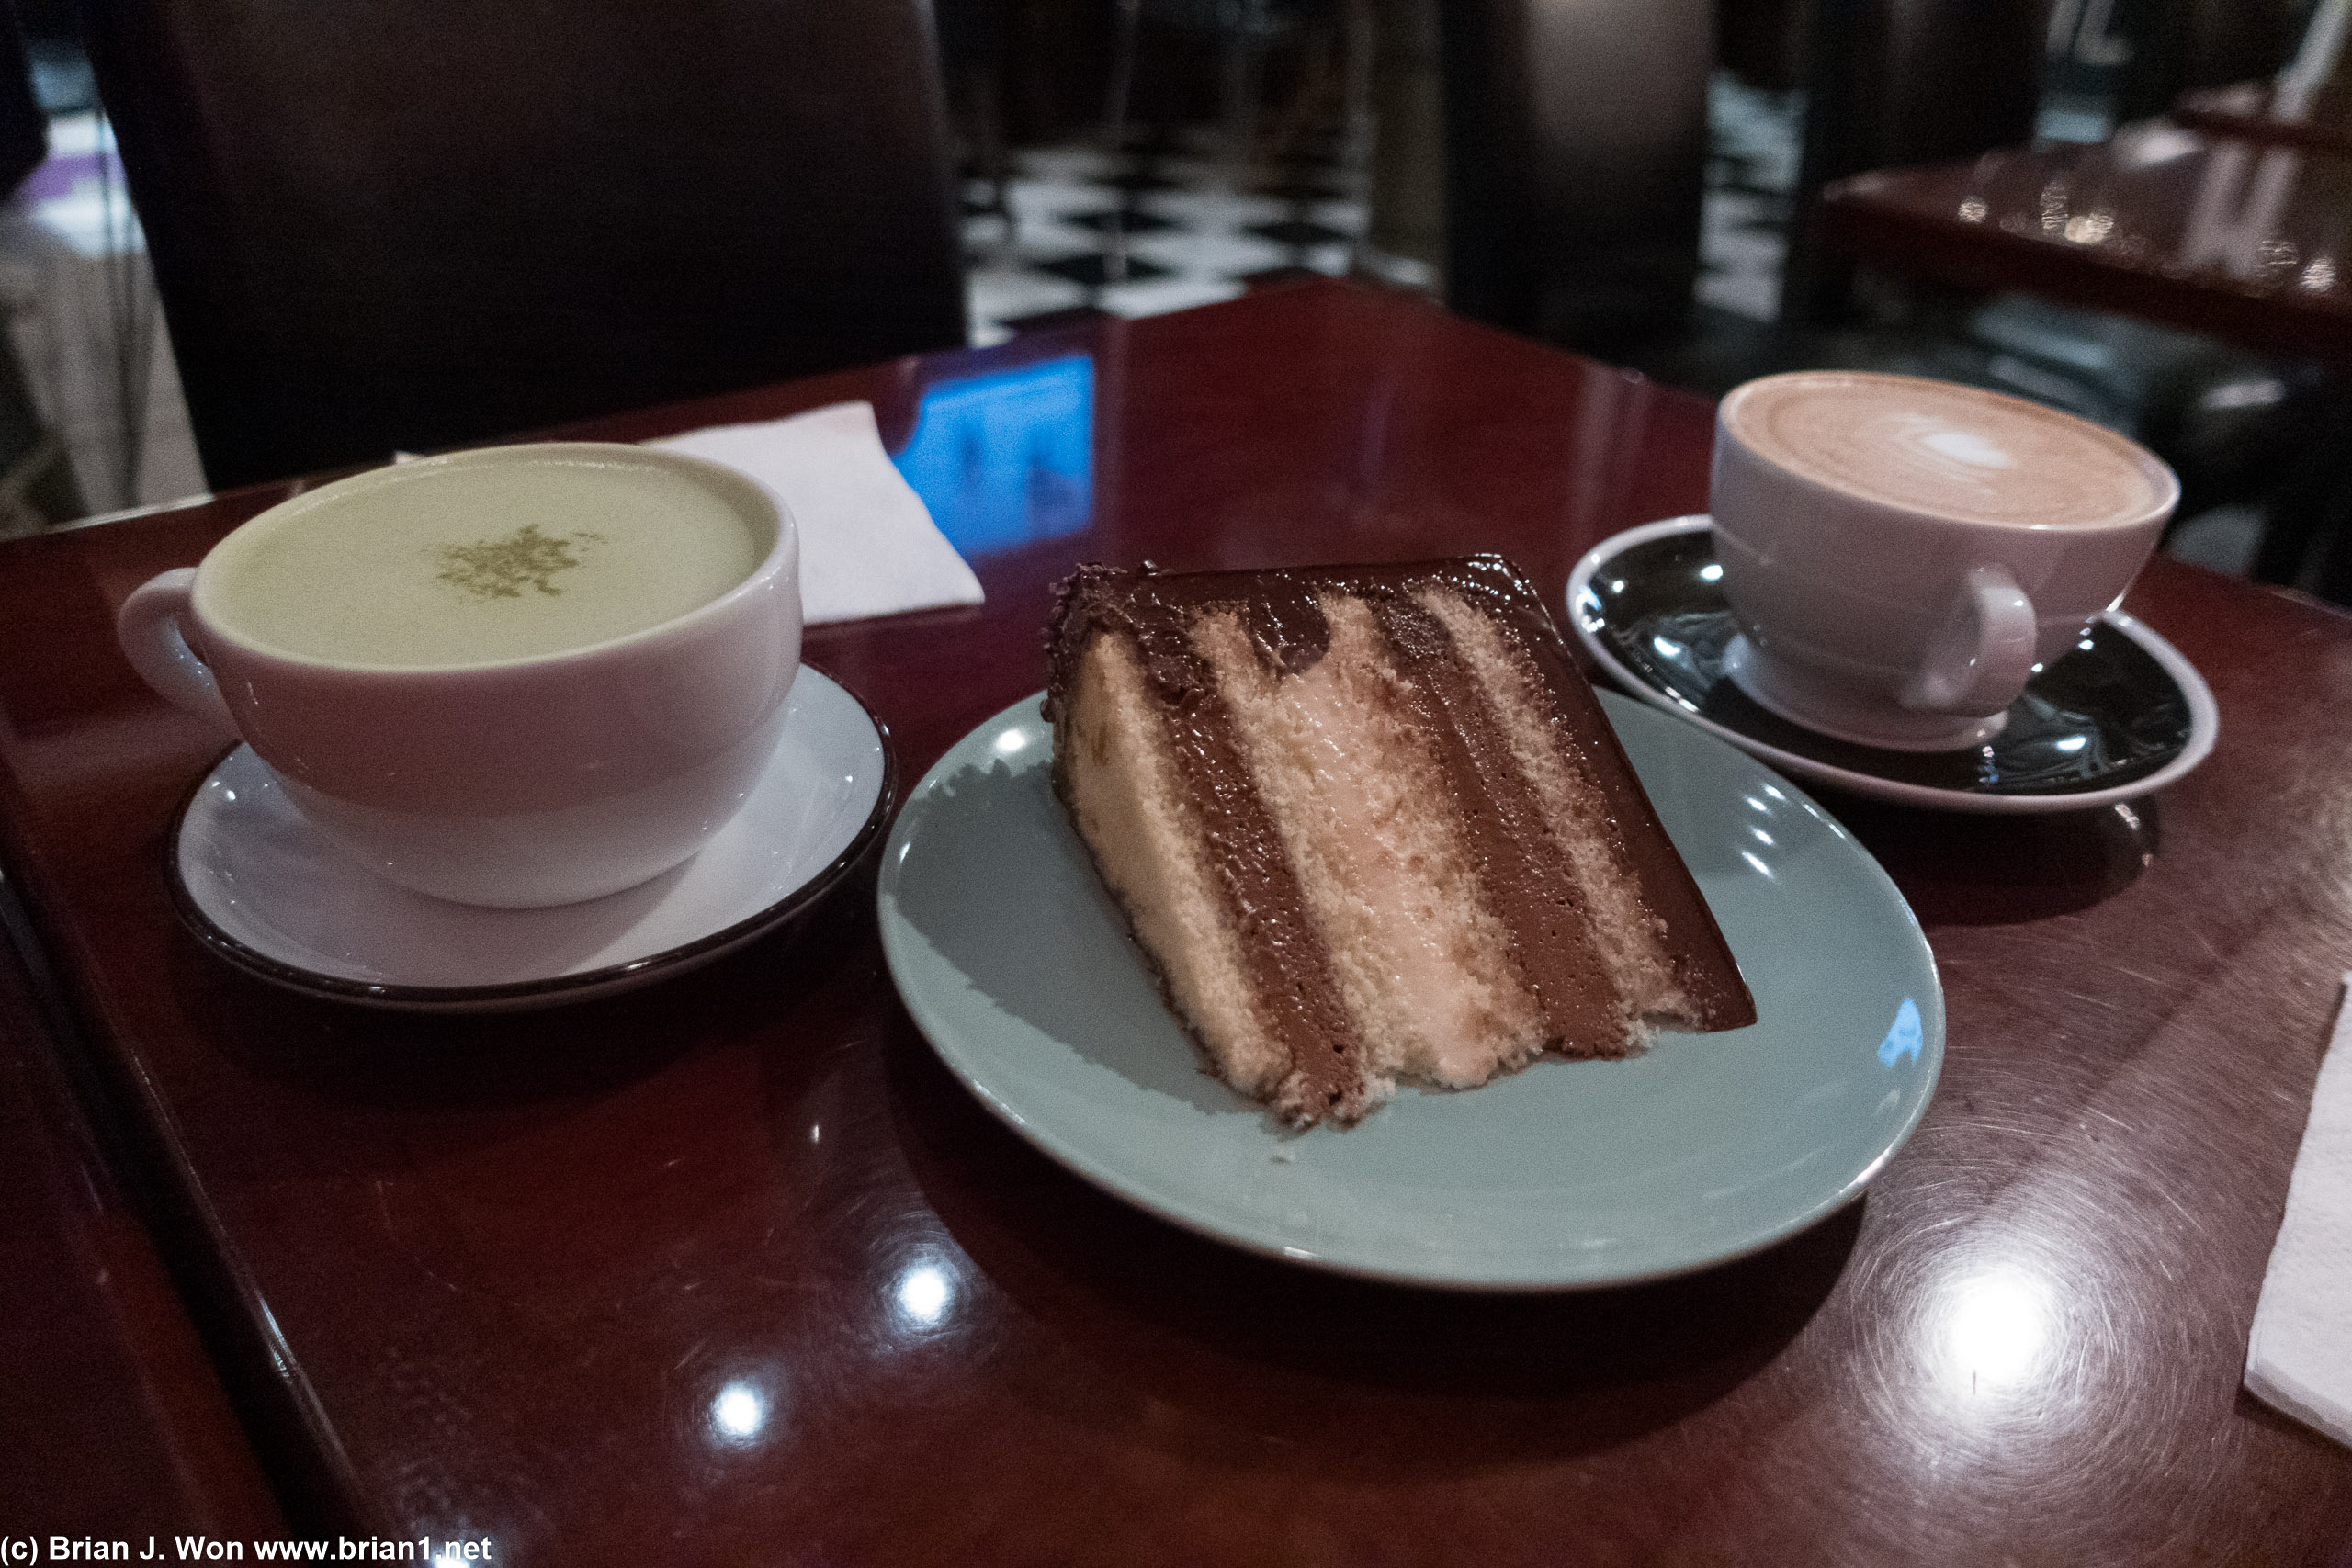 Sweet Lady Jane cake plus lattes at Cafe Loft.